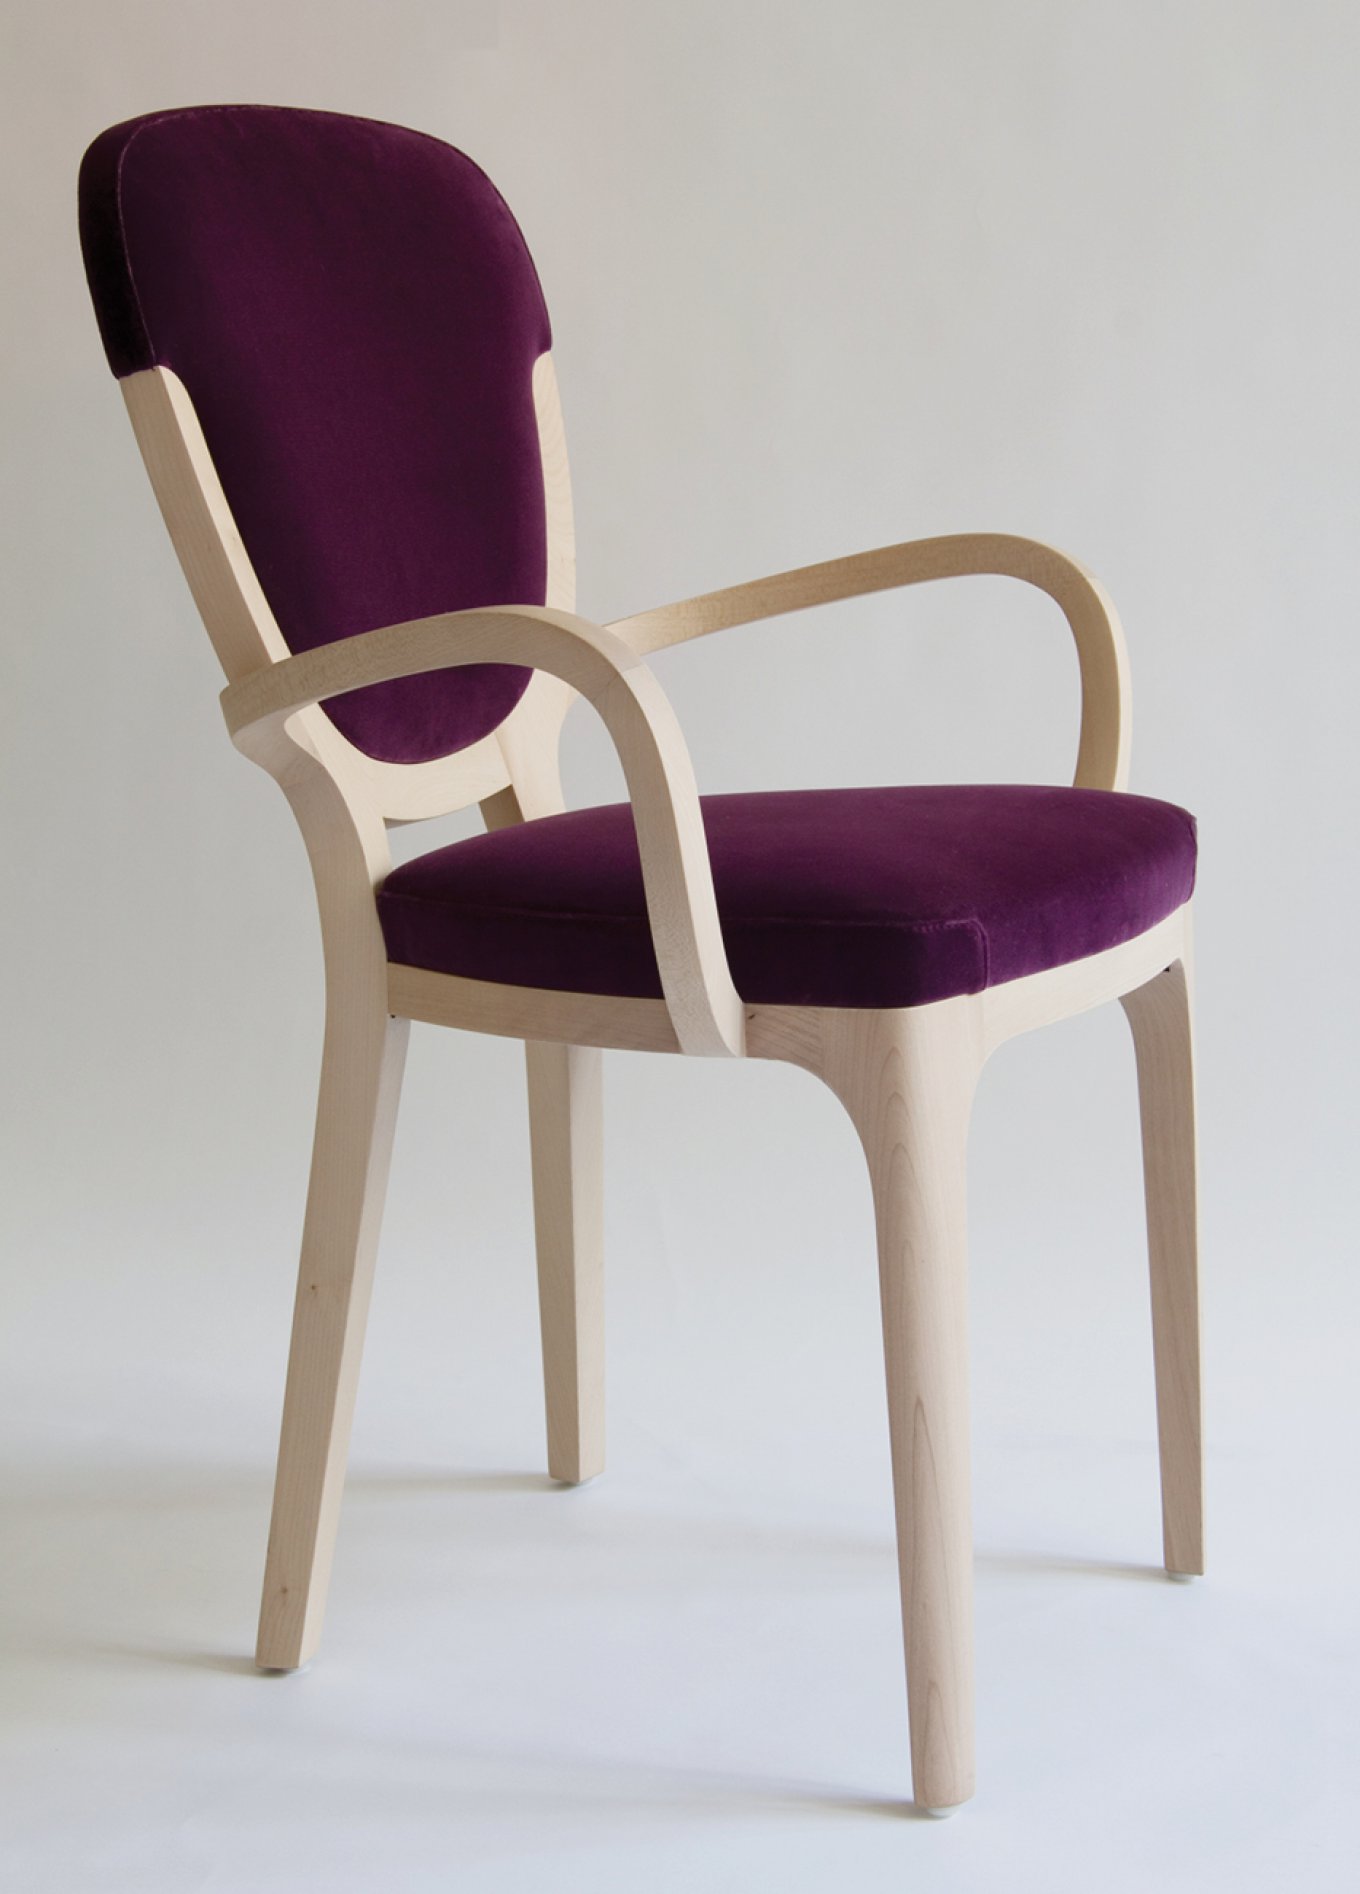 studio catoir interior design chair